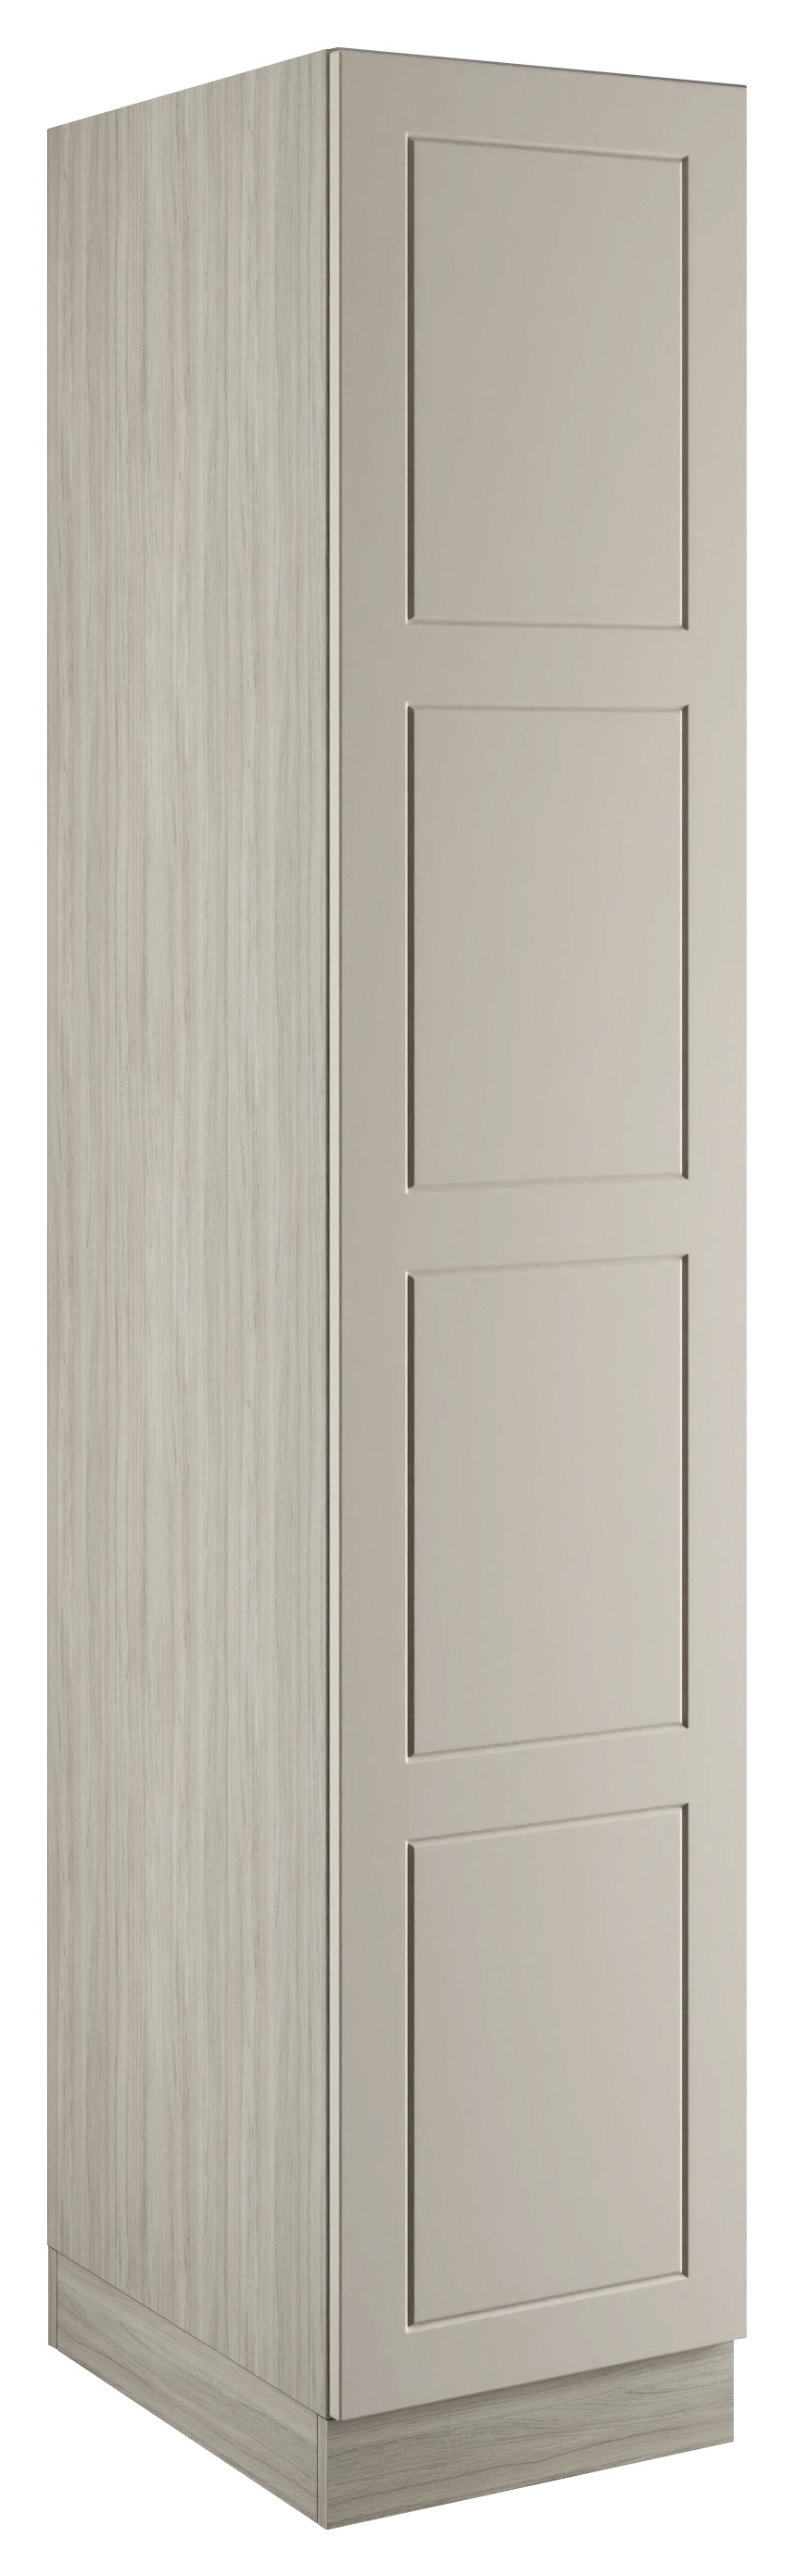 Bramham Taupe Grey Single Wardrobe with Double Rail - 450 x 2260 x 608mm